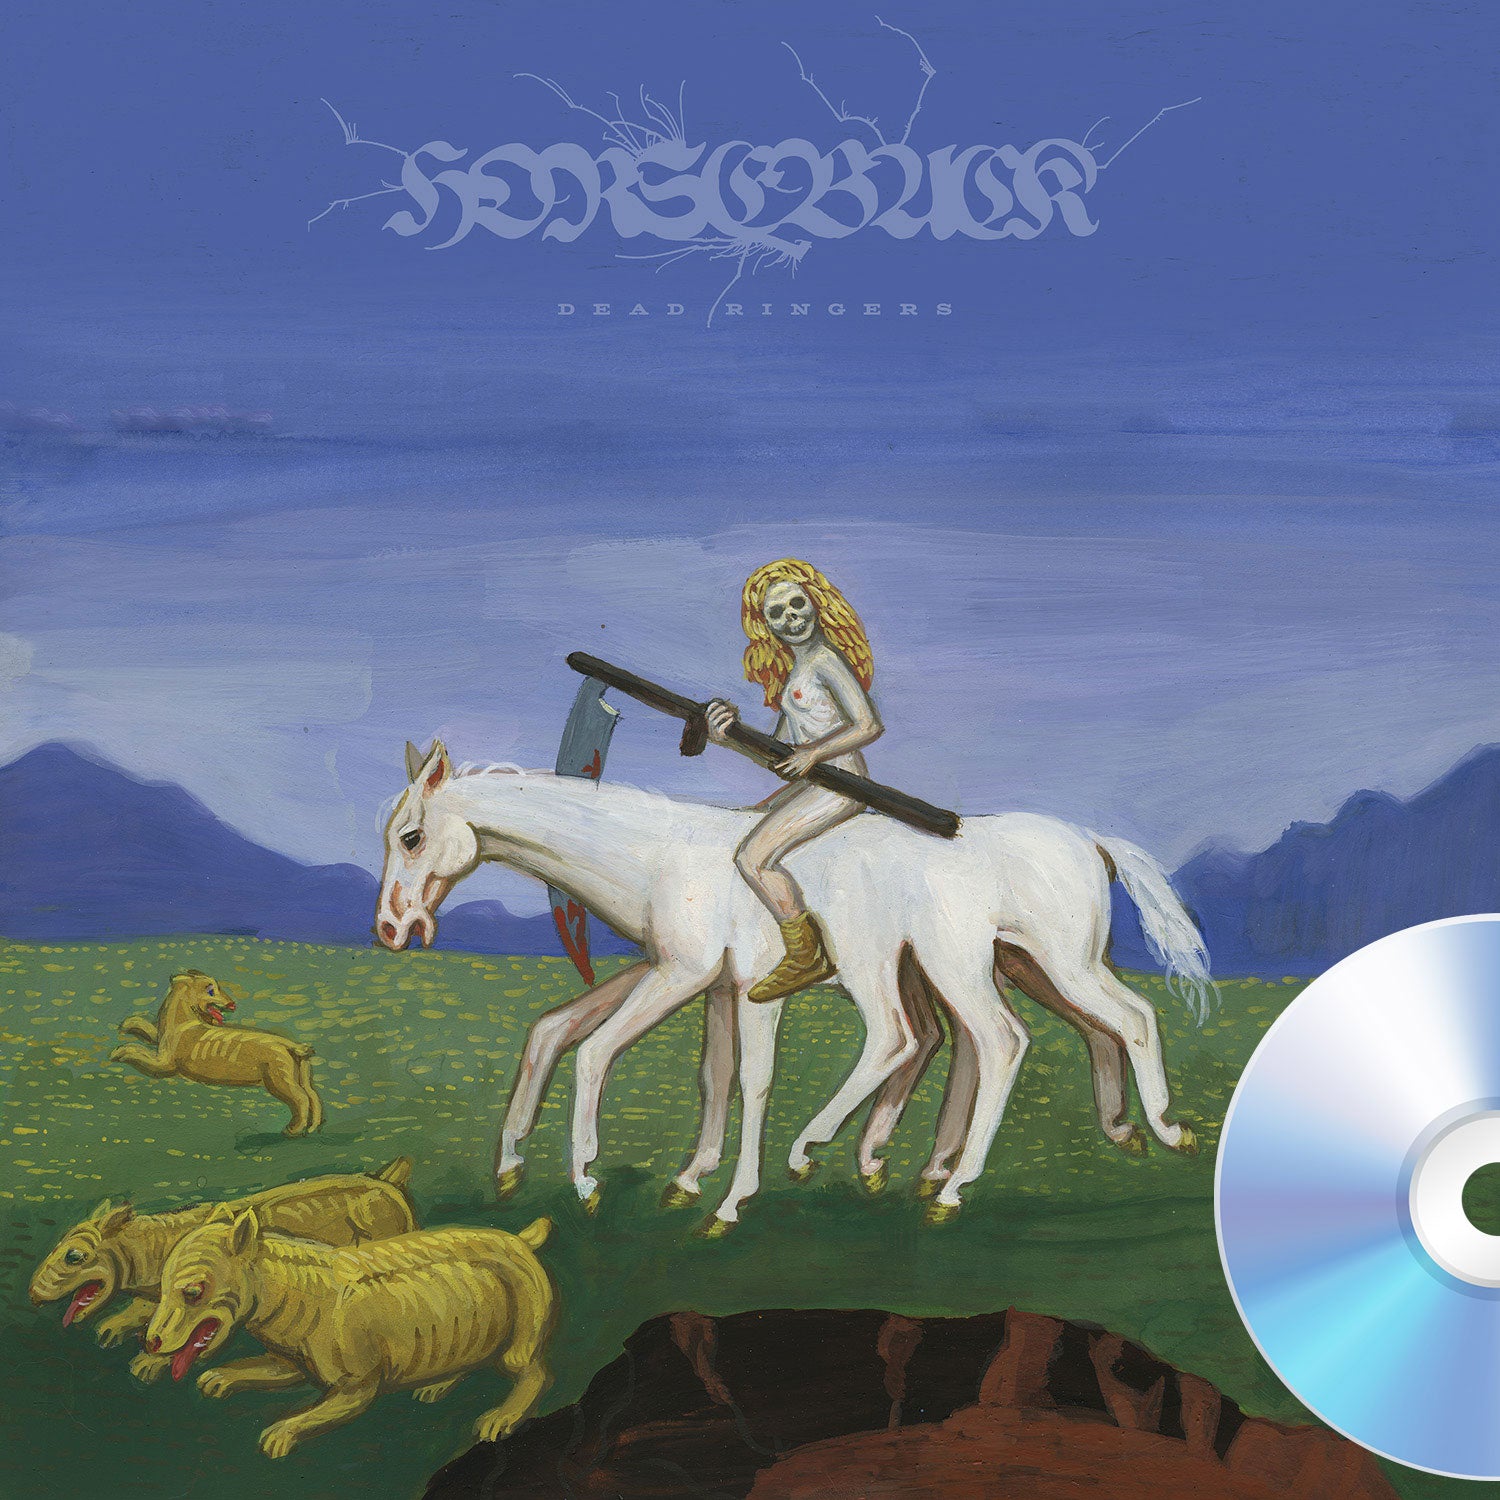 Horseback "Dead Ringers" CD